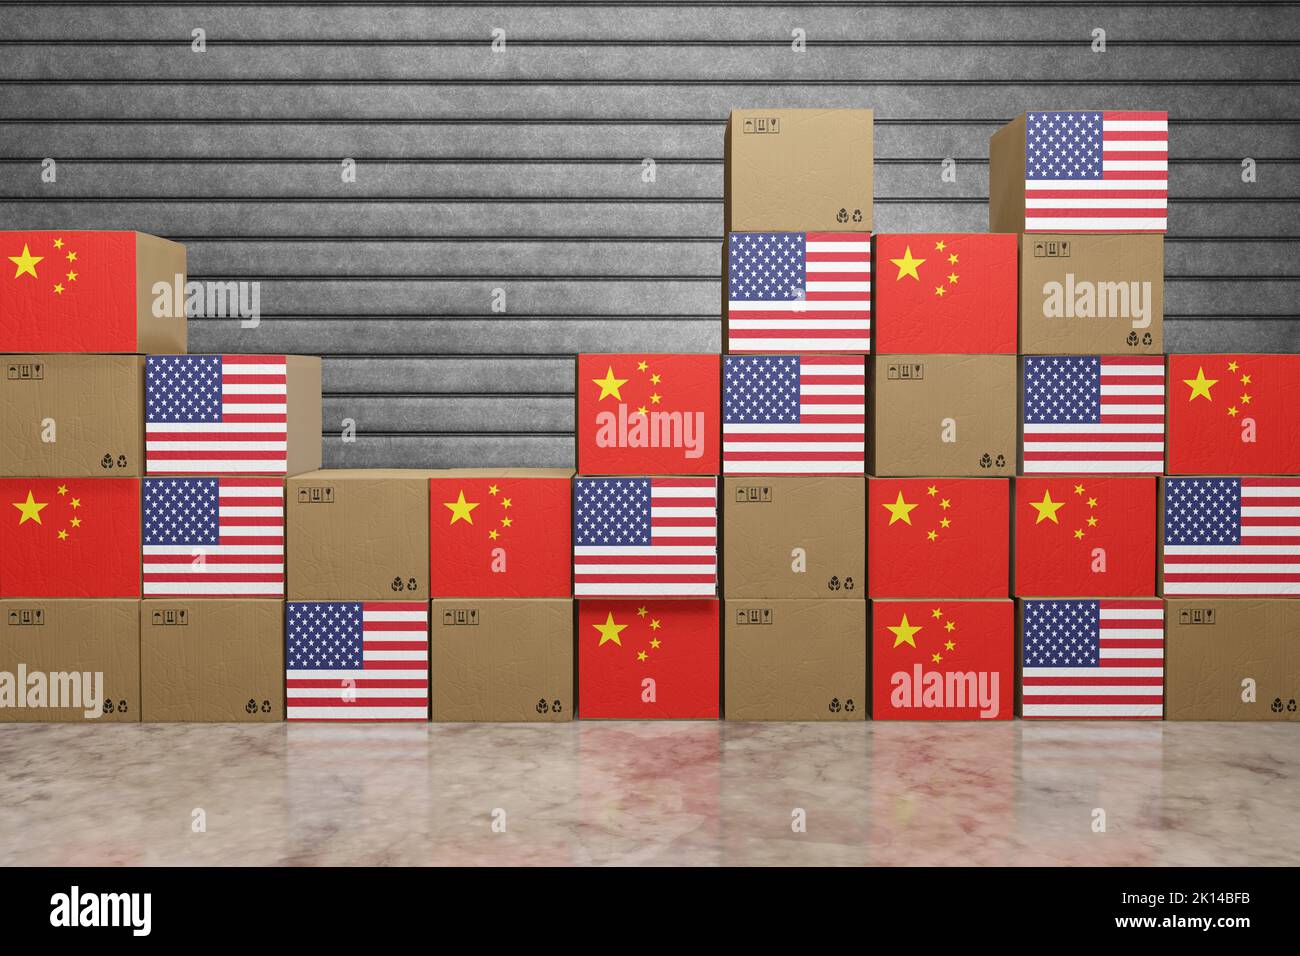 Pile di scatole di cartone con bandiere nazionali degli Stati Uniti e della Cina. Illustrazione della guerra commerciale, delle tariffe di importazione e del protezionismo estremo Foto Stock